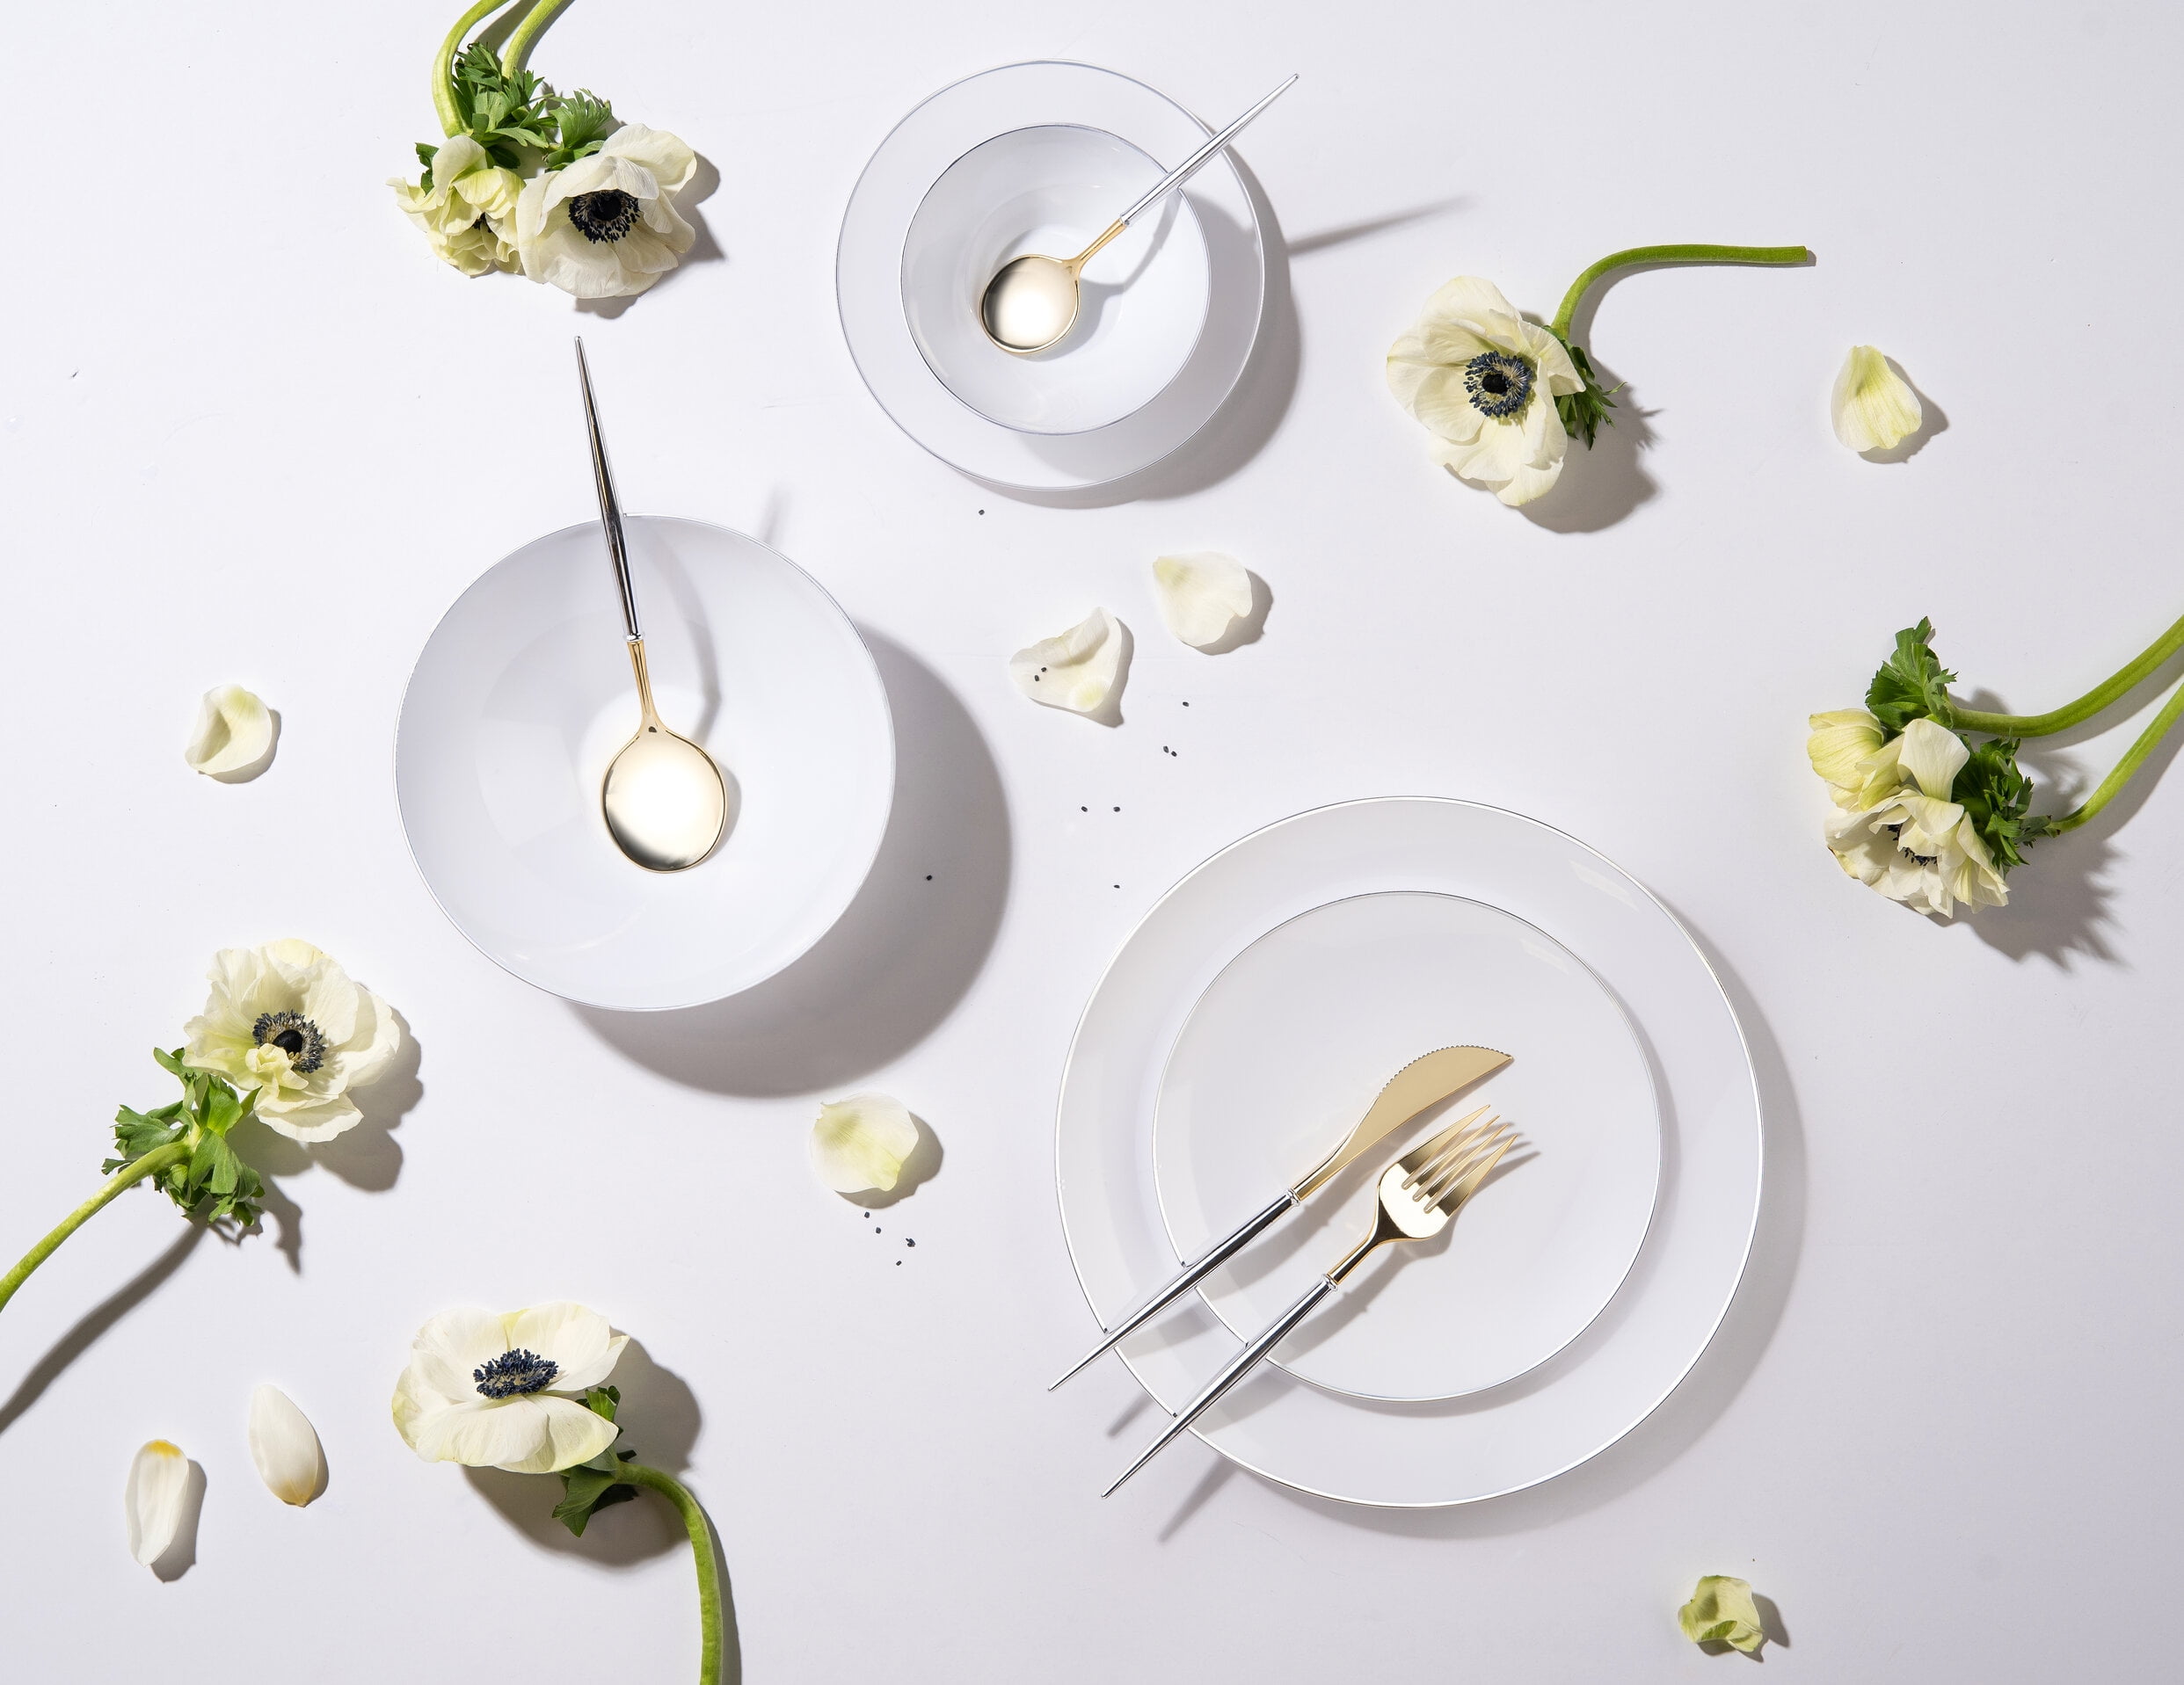 16Oz Black Plastic Floral Design Party Soup Bowls Gold Rim Premium 10 Count